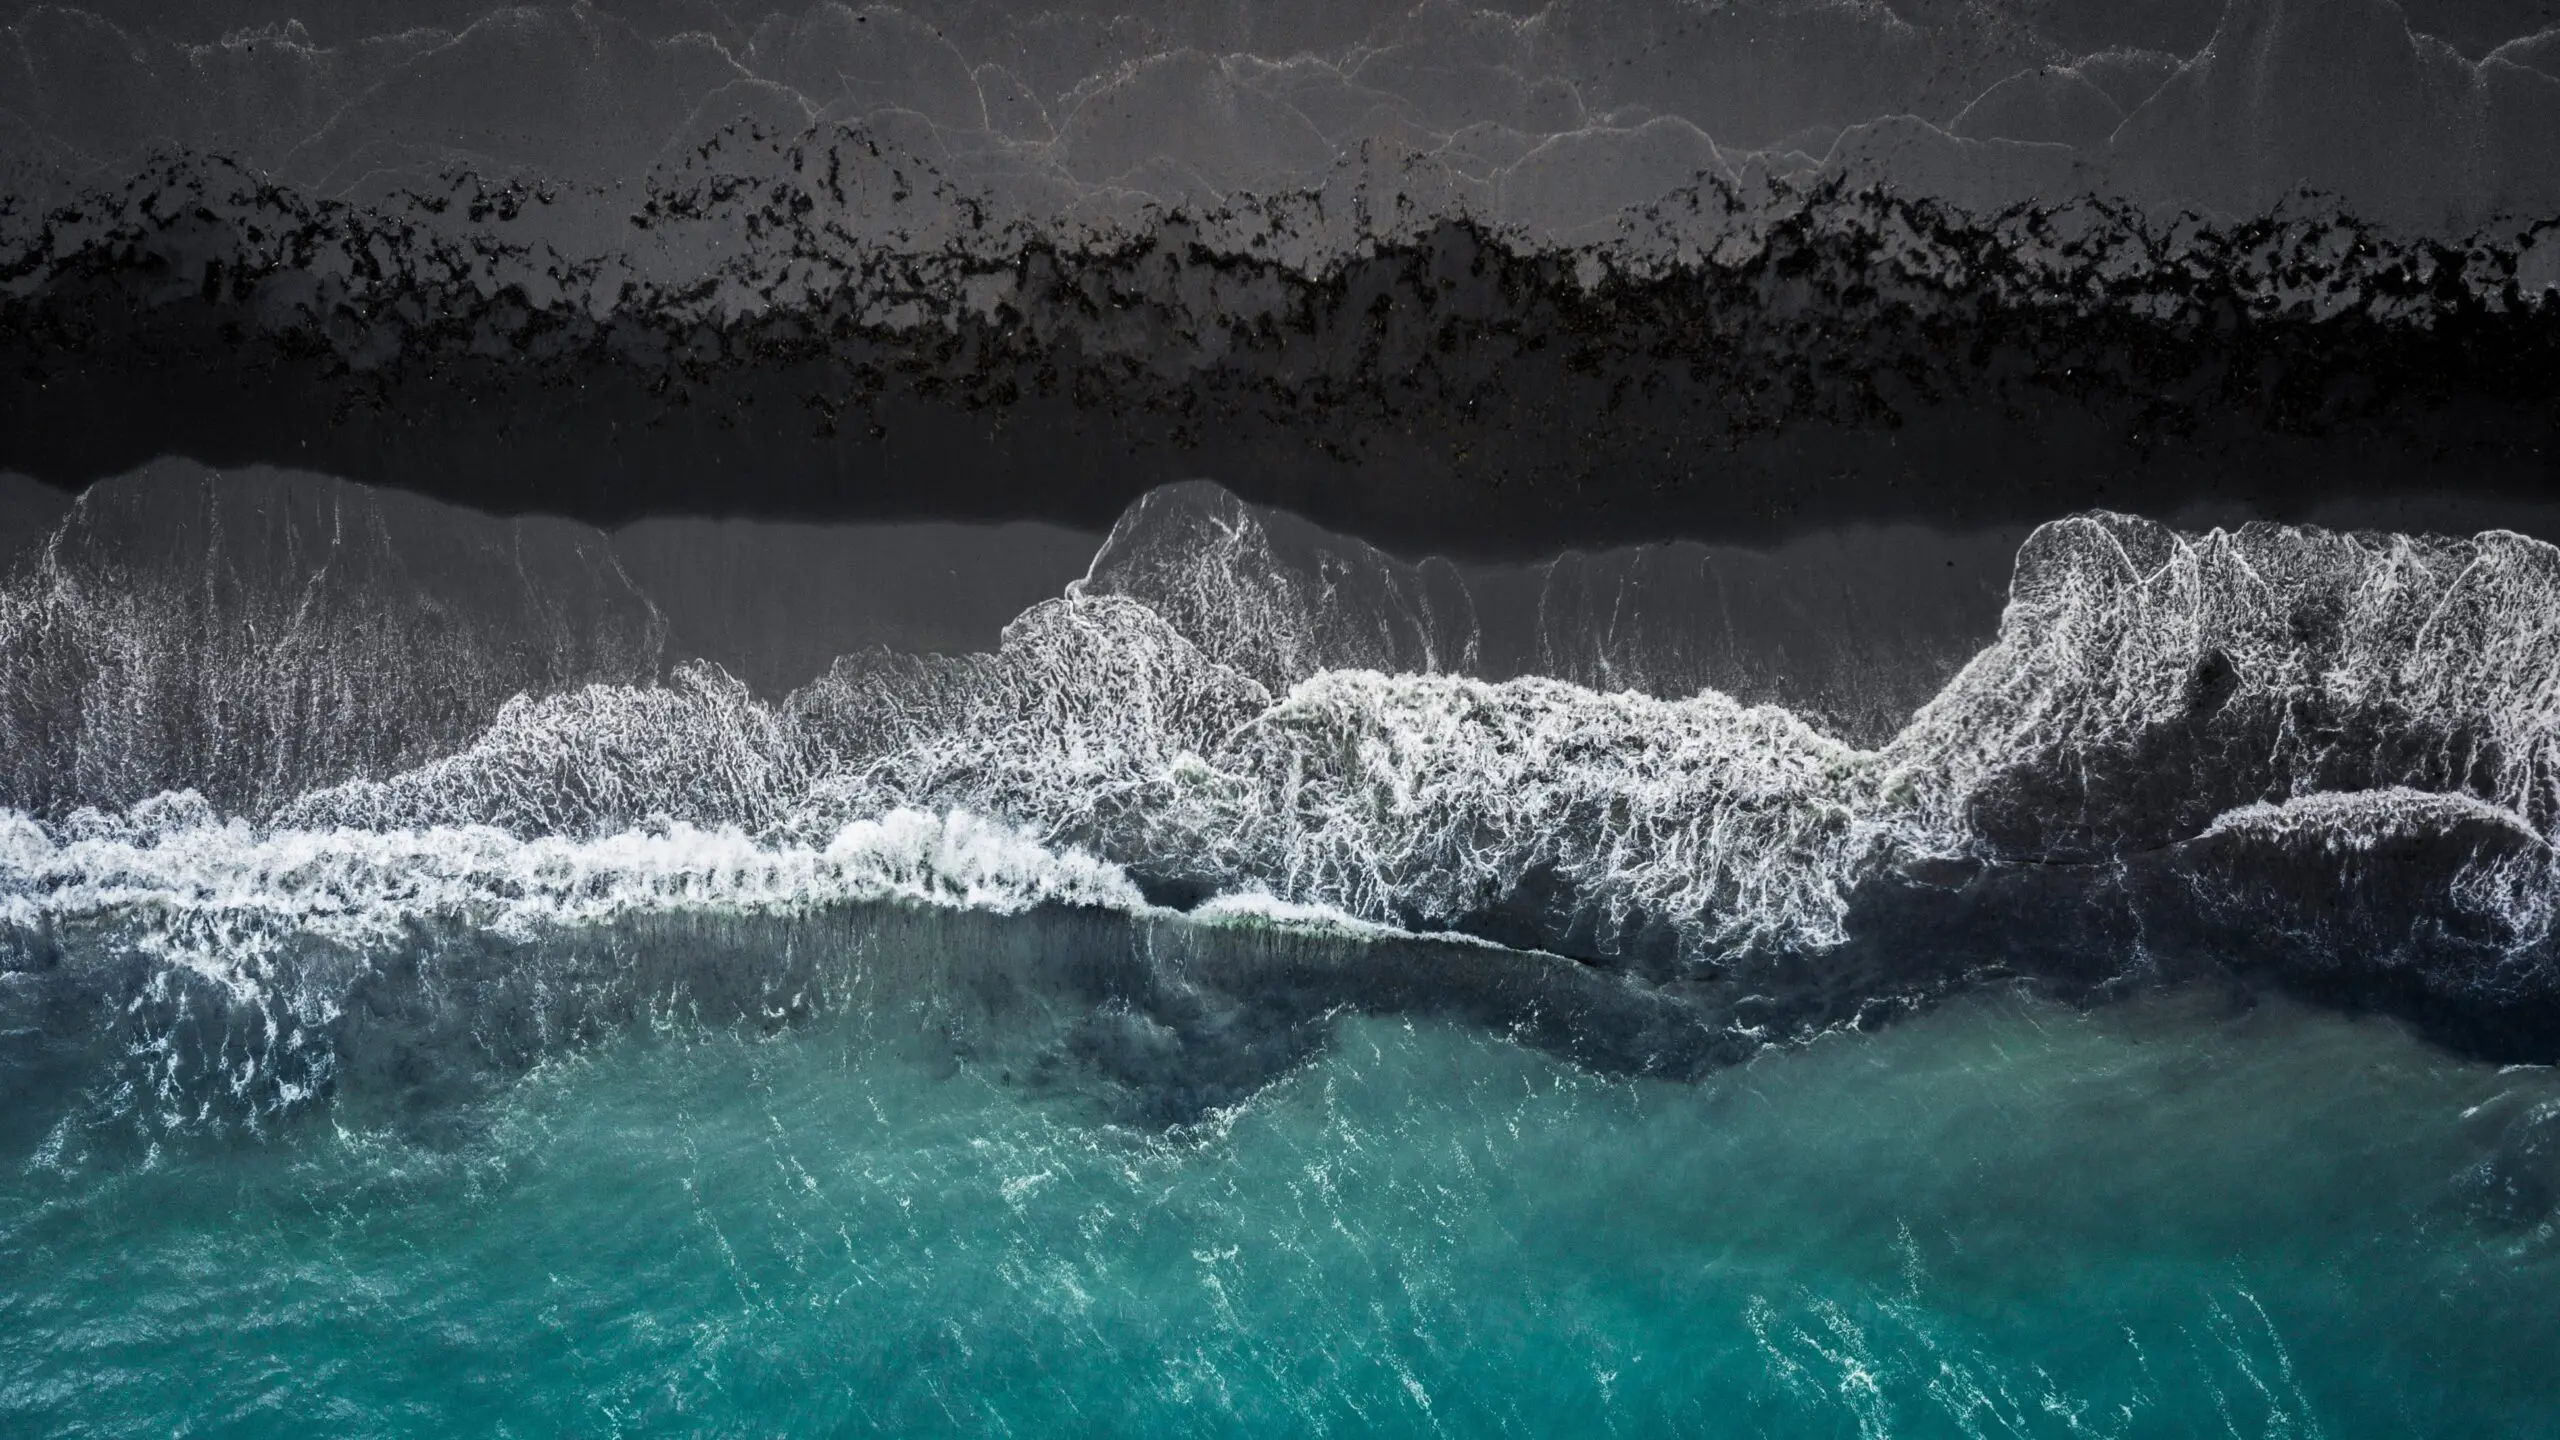 Wandbild (6320) Black Beach by Marcus Hennen, 1x.com präsentiert: Aktion-Bewegung,Wasser,Details und Strukturen,Abstrakt,Natur,Meere,Steine,Sonstige Naturdetails